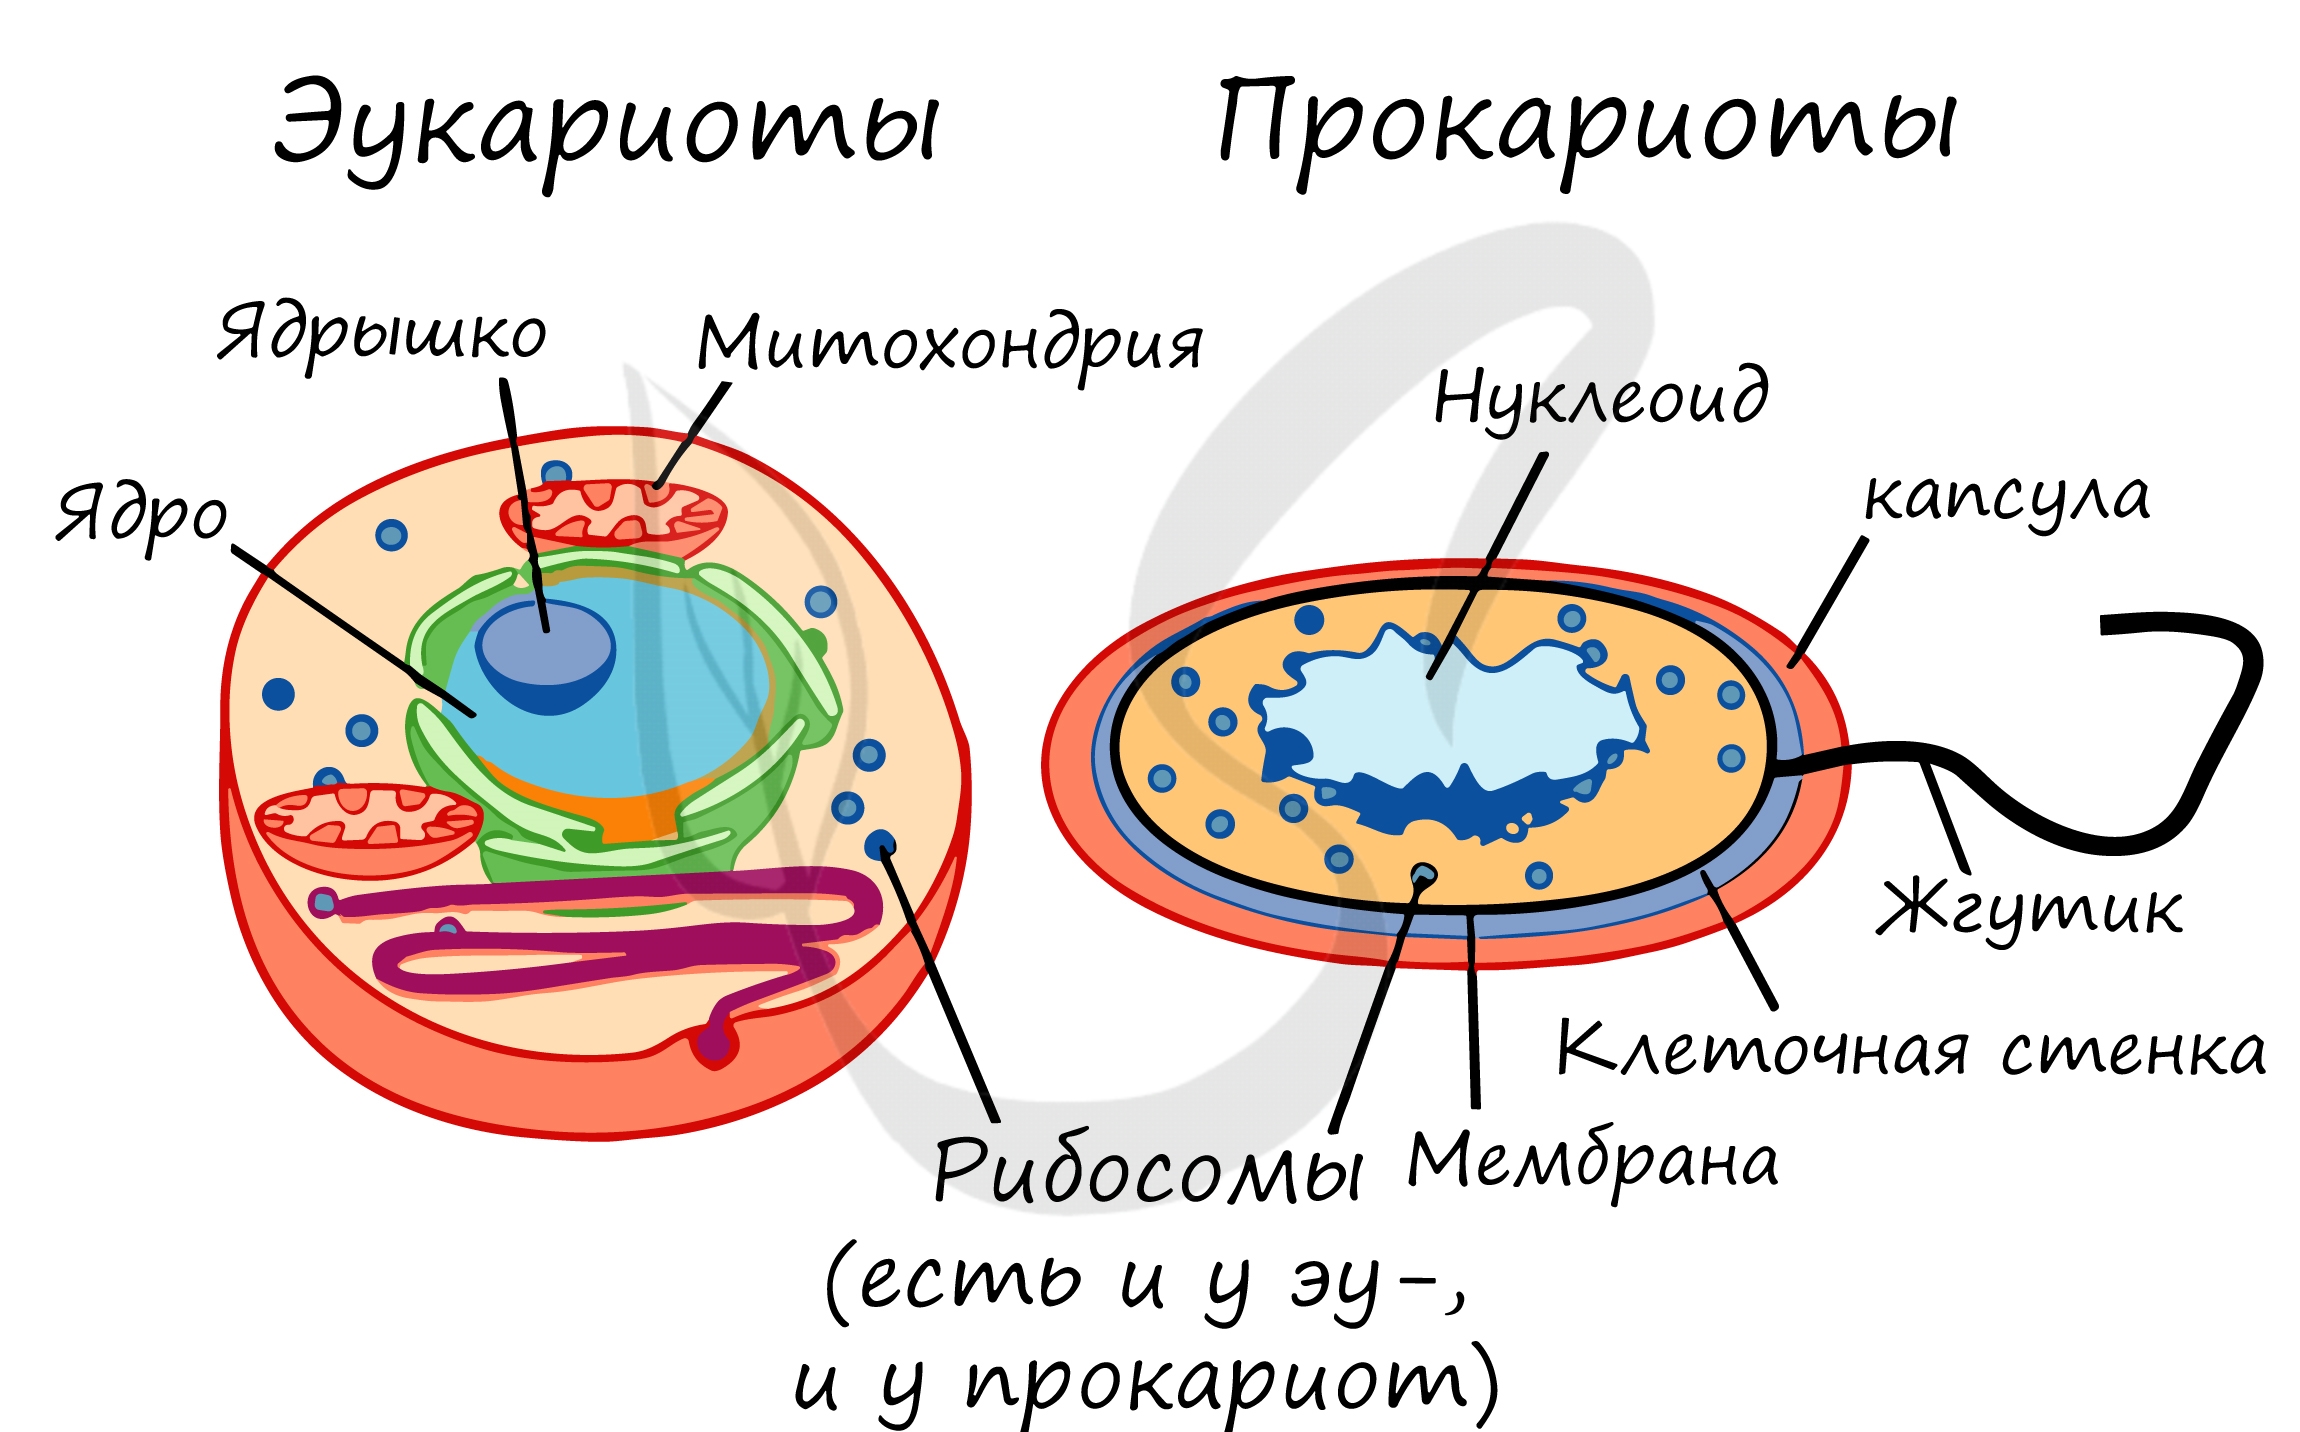 Клетки прокариот не имеют ядра. Строение клетки прокариот и эукариот. Строение бактерий прокариоты и эукариоты. Отличие прокариот от эукариот рисунок. Прокариотическая клетка и эукариотическая клетка строение.